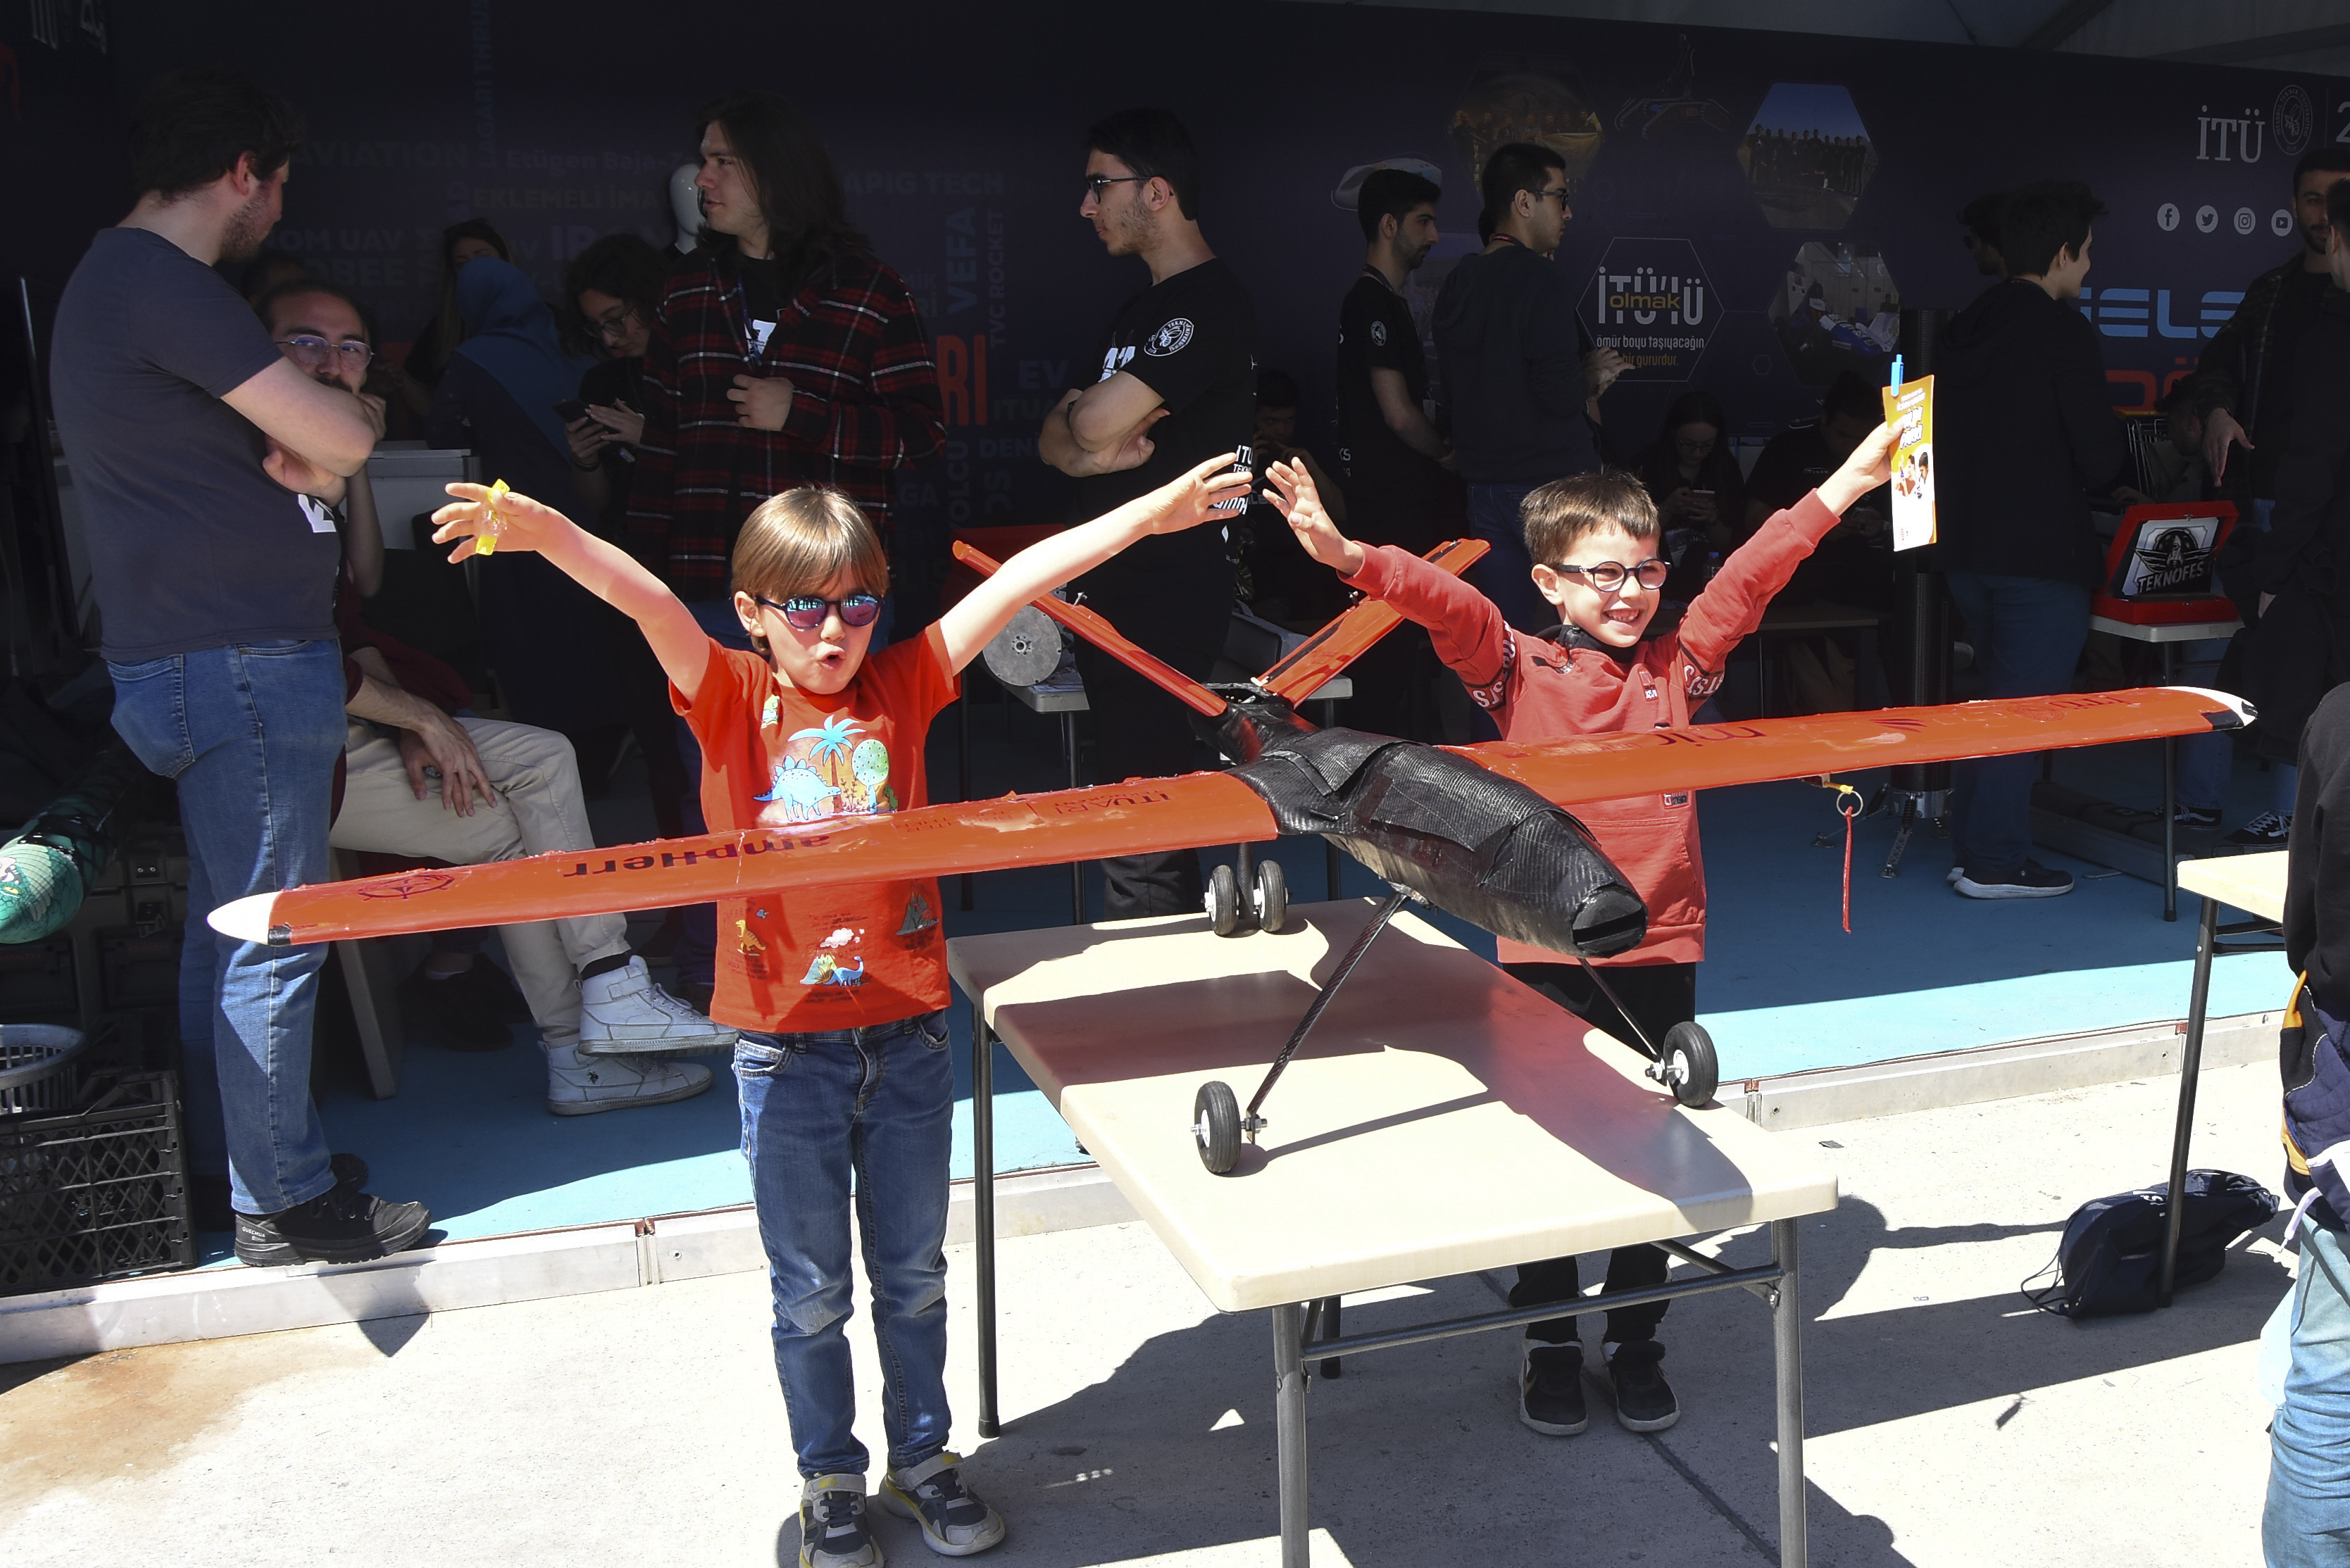 Ödül kazanan İTÜ ATA insansız hava aracının kanatları hizasında kollarını iki yana açarak kartal duruşuyla gülümseyen iki küçük çocuk